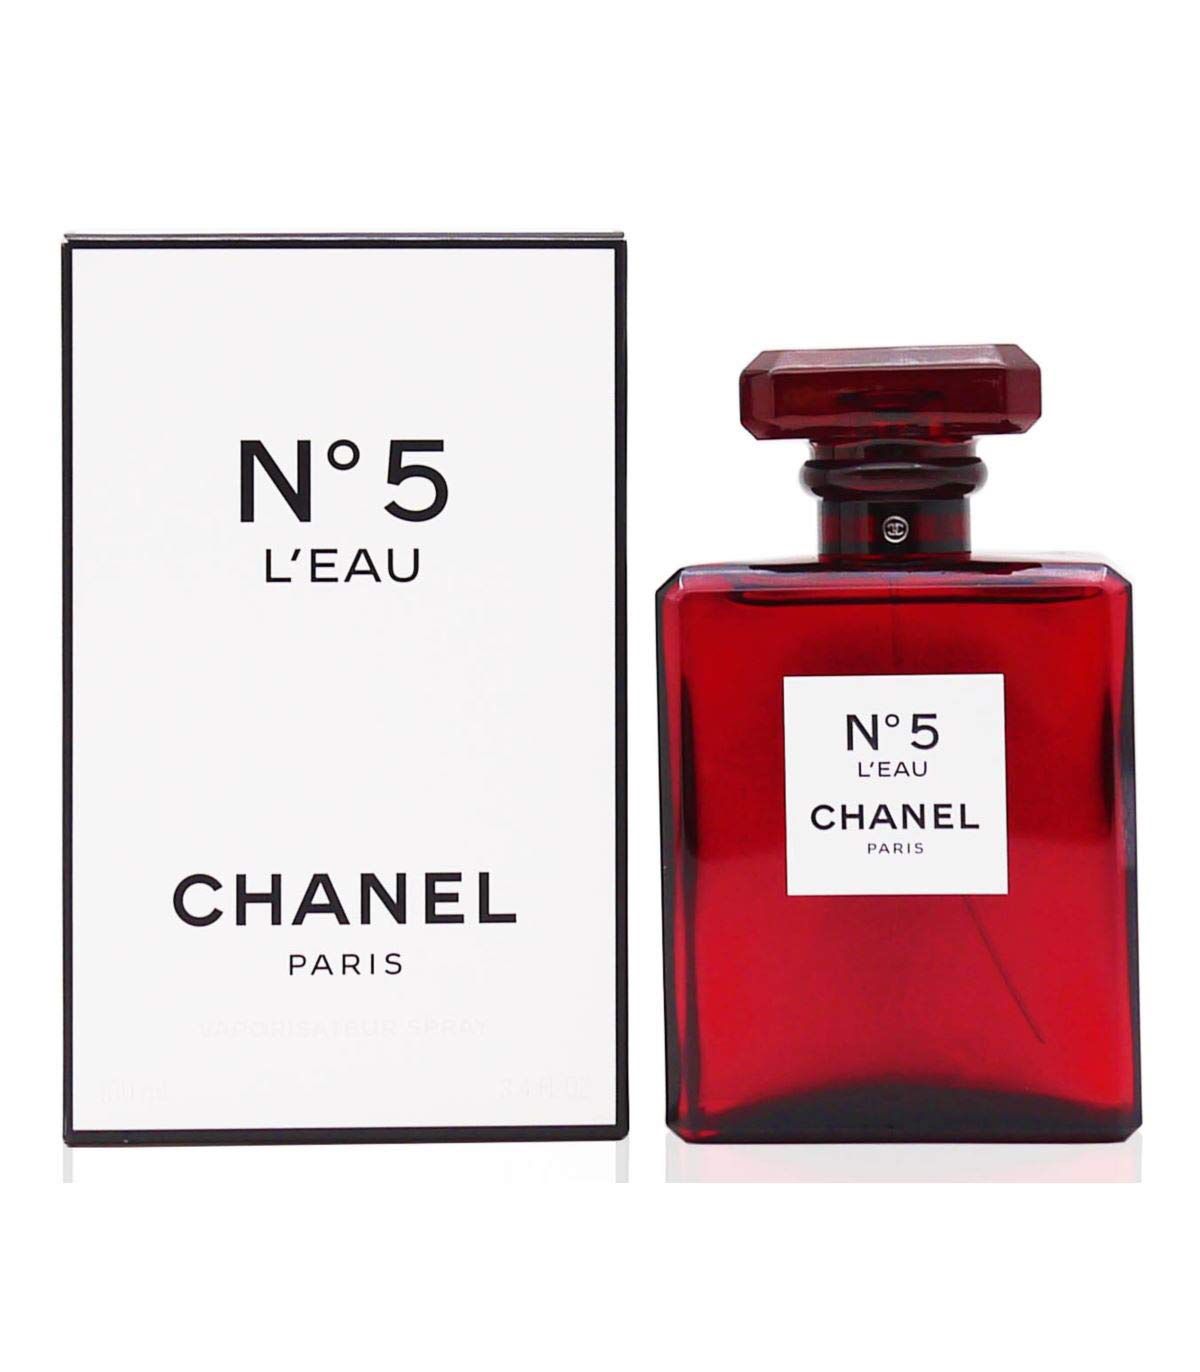 Chanel No. 5 Eau de Parfum 3.4 FL. OZ. / 100 ml Red Bottle Limited Edition  NEW